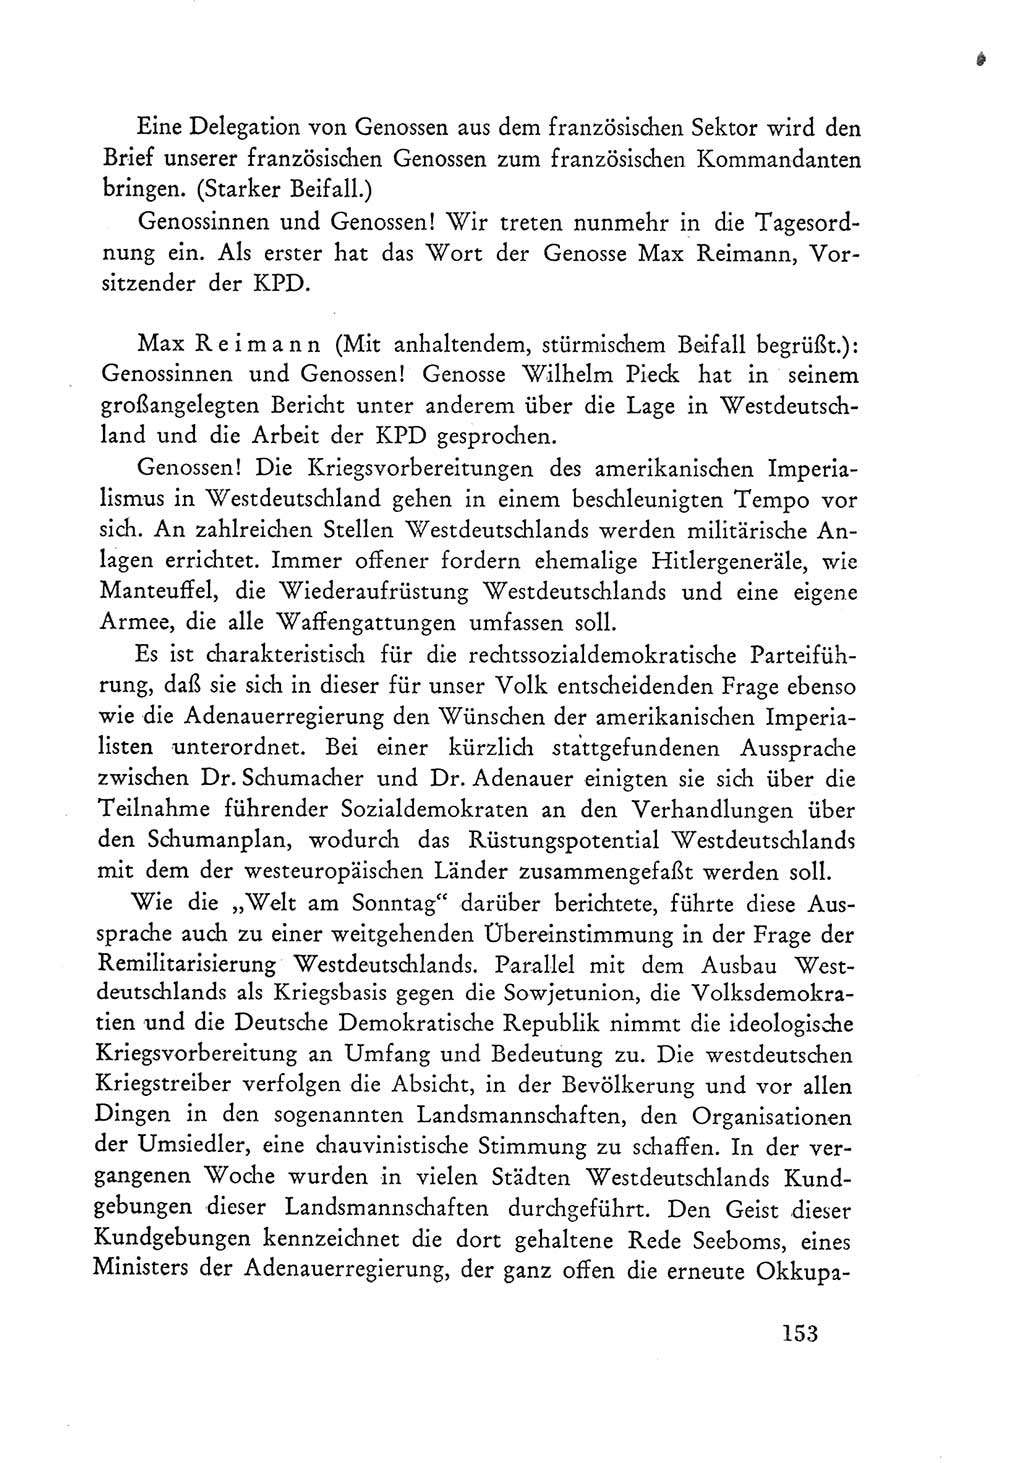 Protokoll der Verhandlungen des Ⅲ. Parteitages der Sozialistischen Einheitspartei Deutschlands (SED) [Deutsche Demokratische Republik (DDR)] 1950, Band 1, Seite 153 (Prot. Verh. Ⅲ. PT SED DDR 1950, Bd. 1, S. 153)